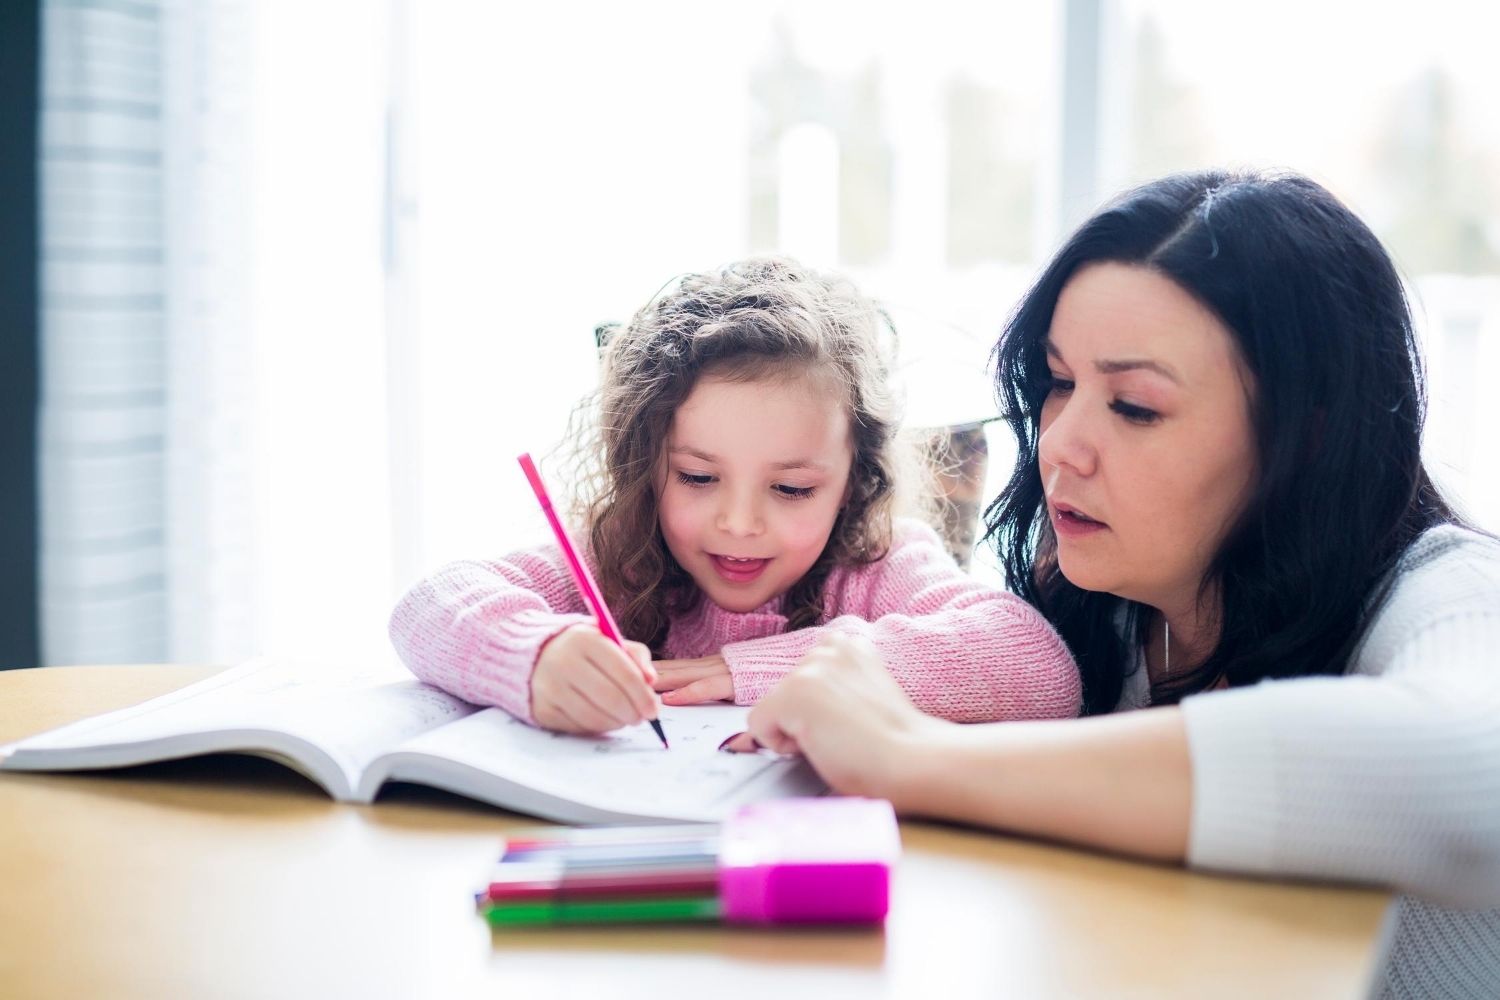 6 tips for homeschooling